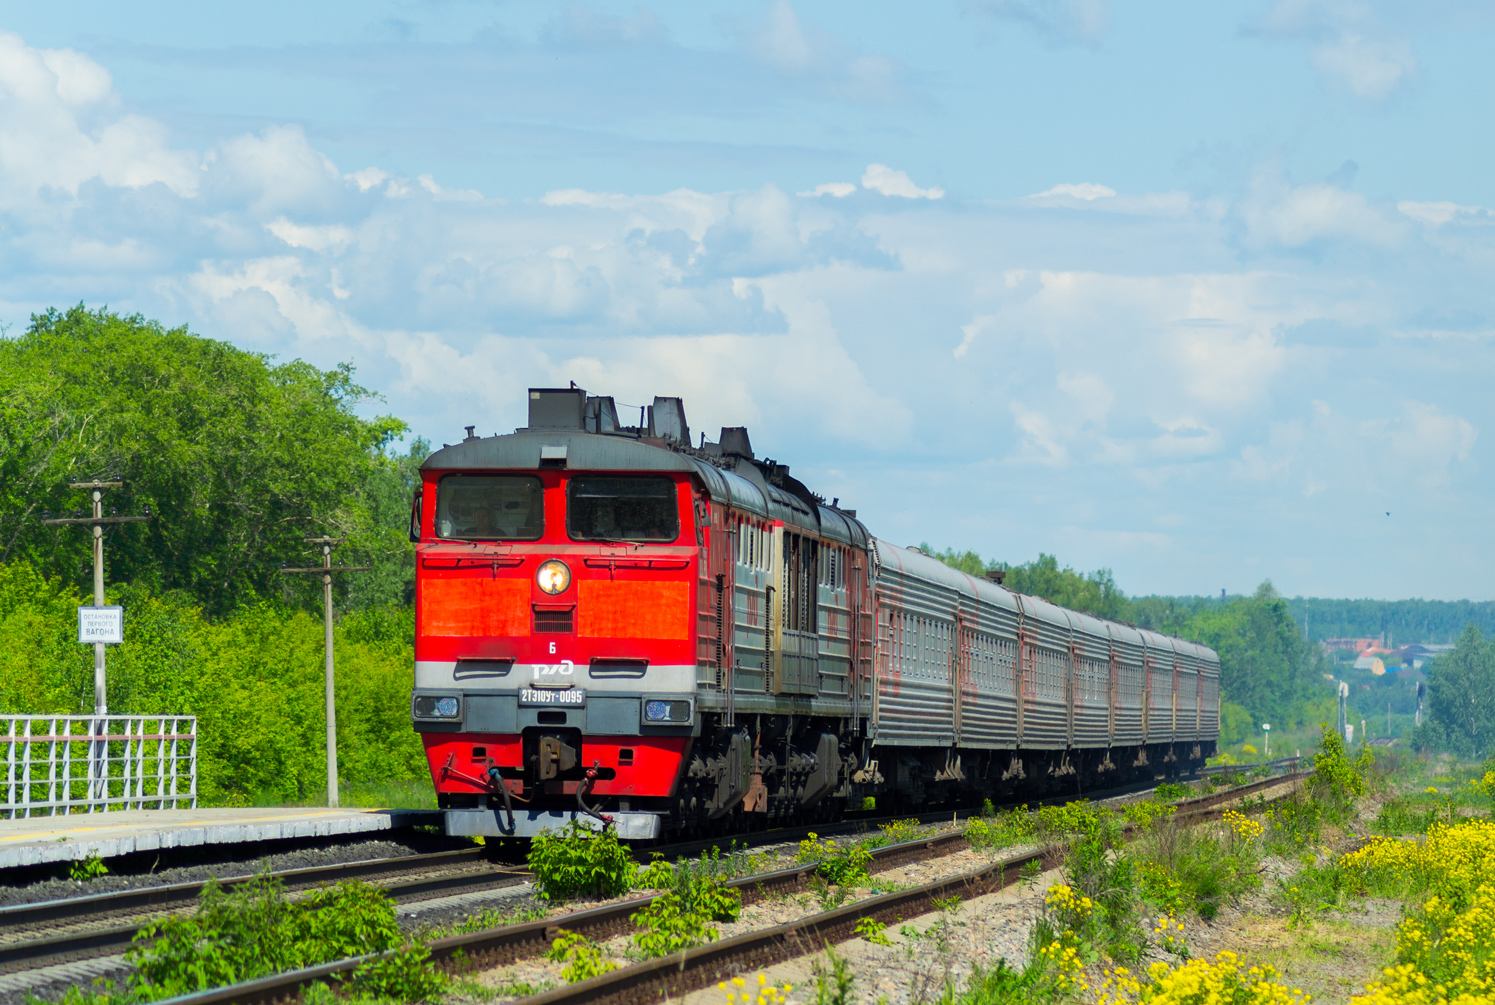 поезд 145 санкт петербург челябинск